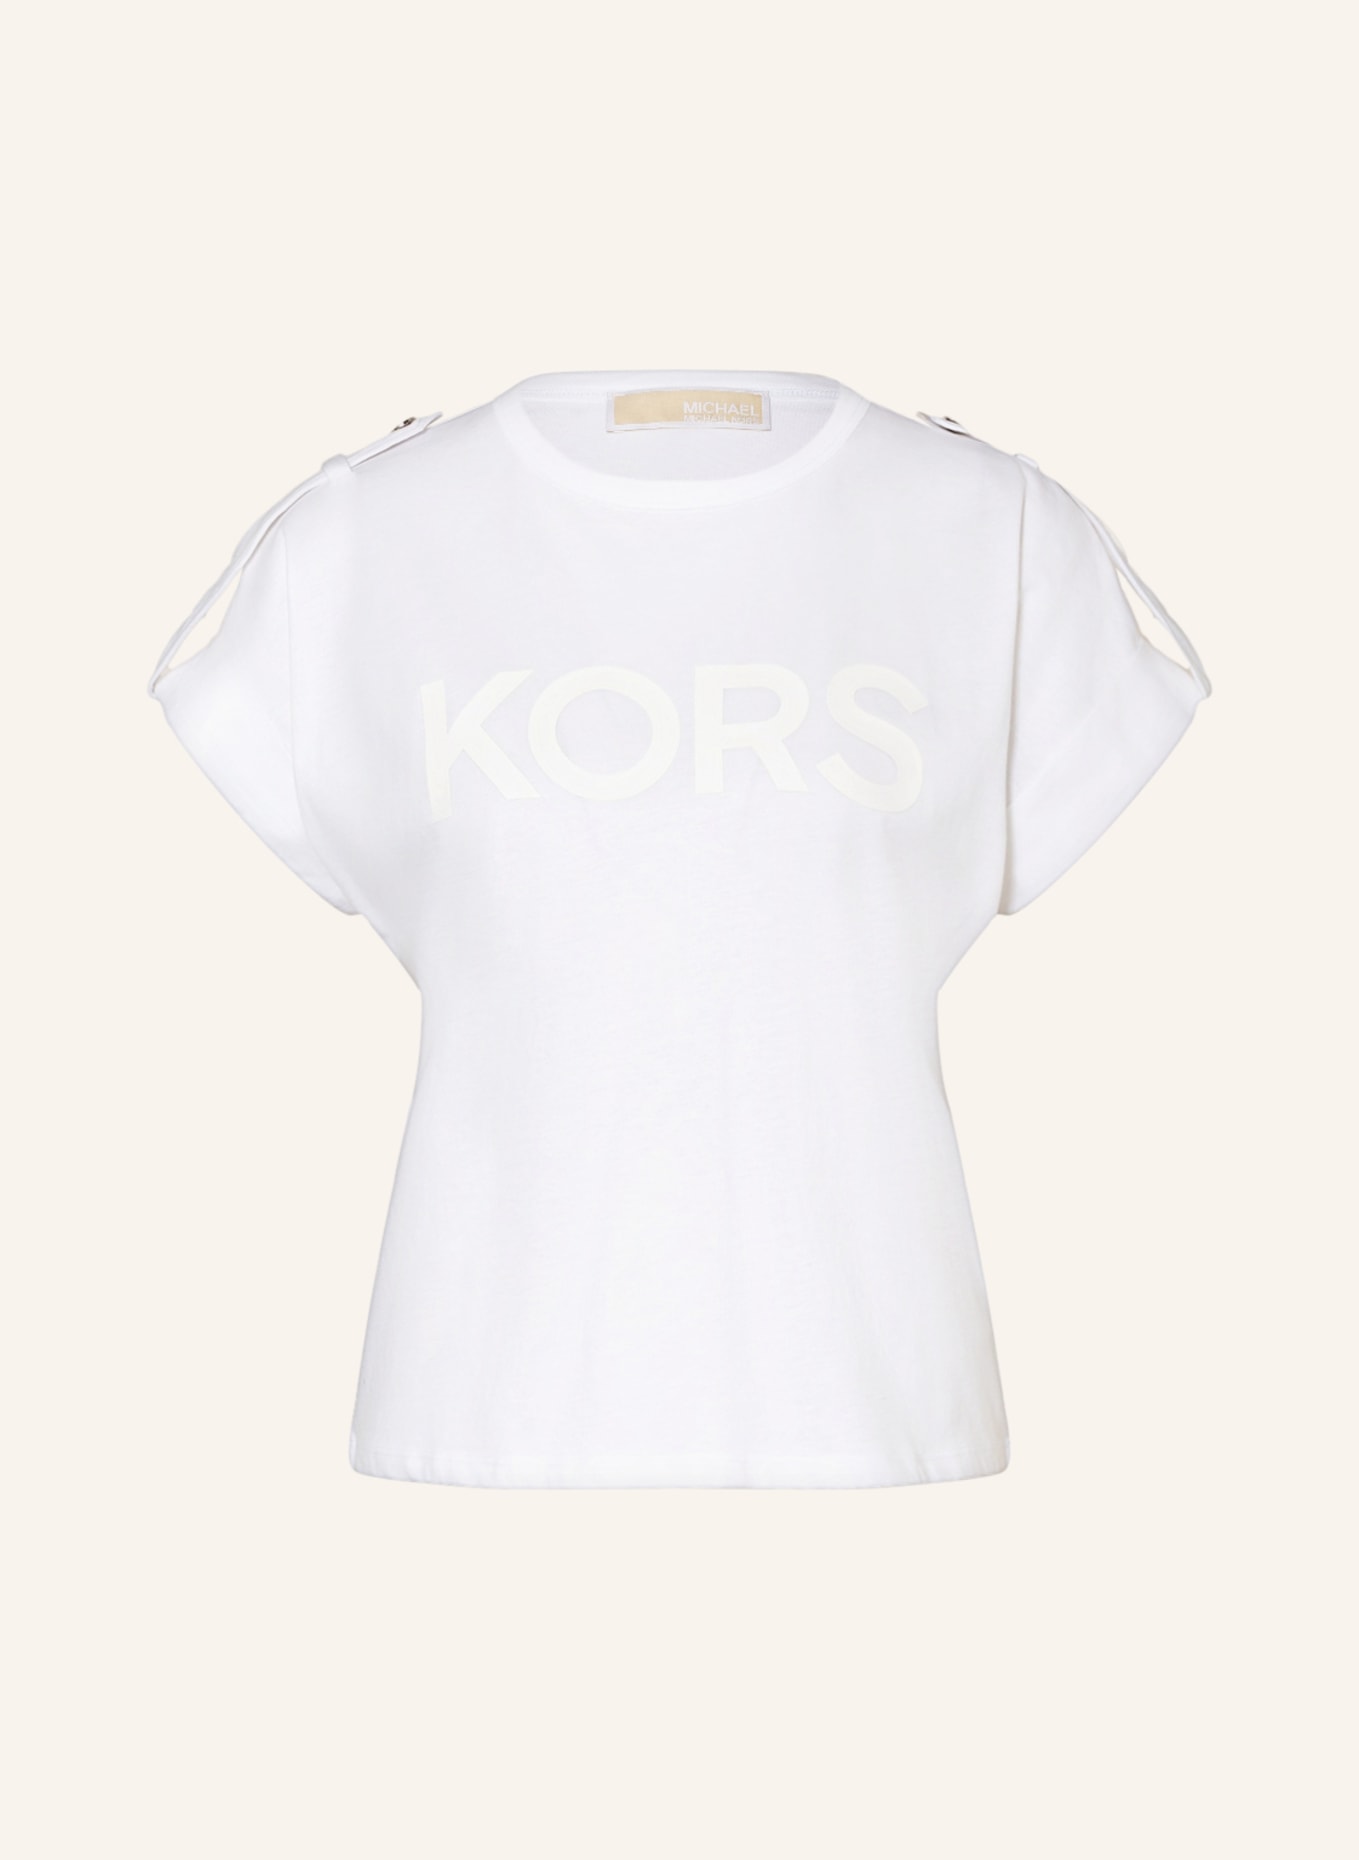 Vivid logo Tshirt  Michael Kors  Shop Mens Logo Tees  Graphic TShirts  Online  Simons